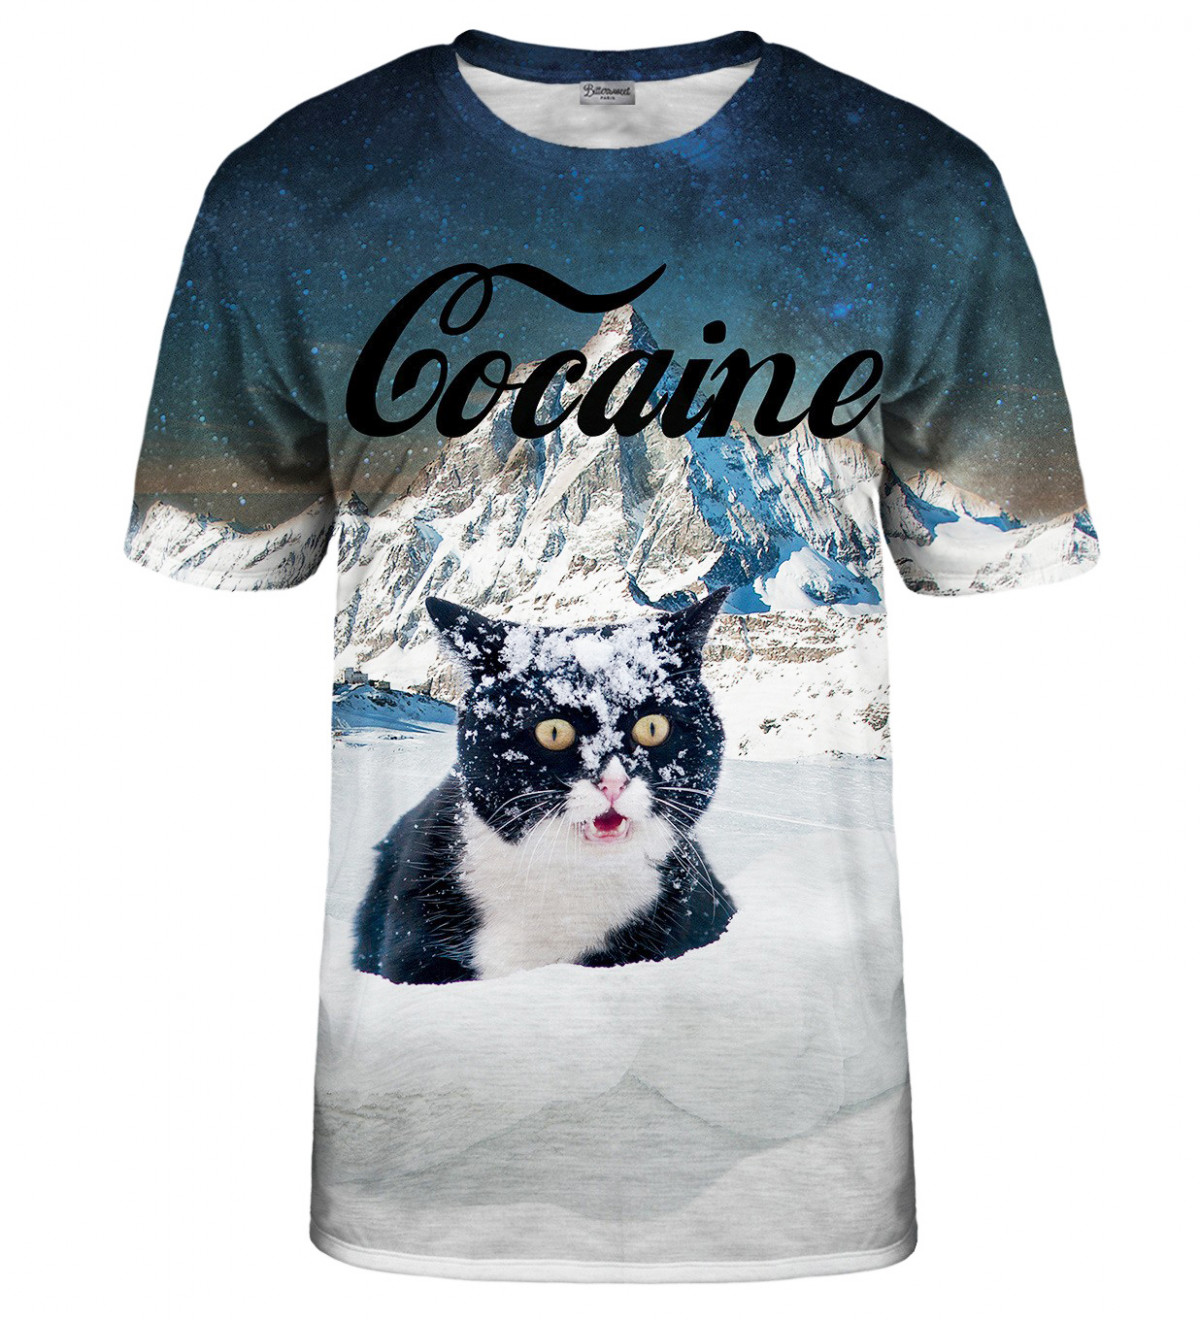 Cocaine Cat T-Shirt - S